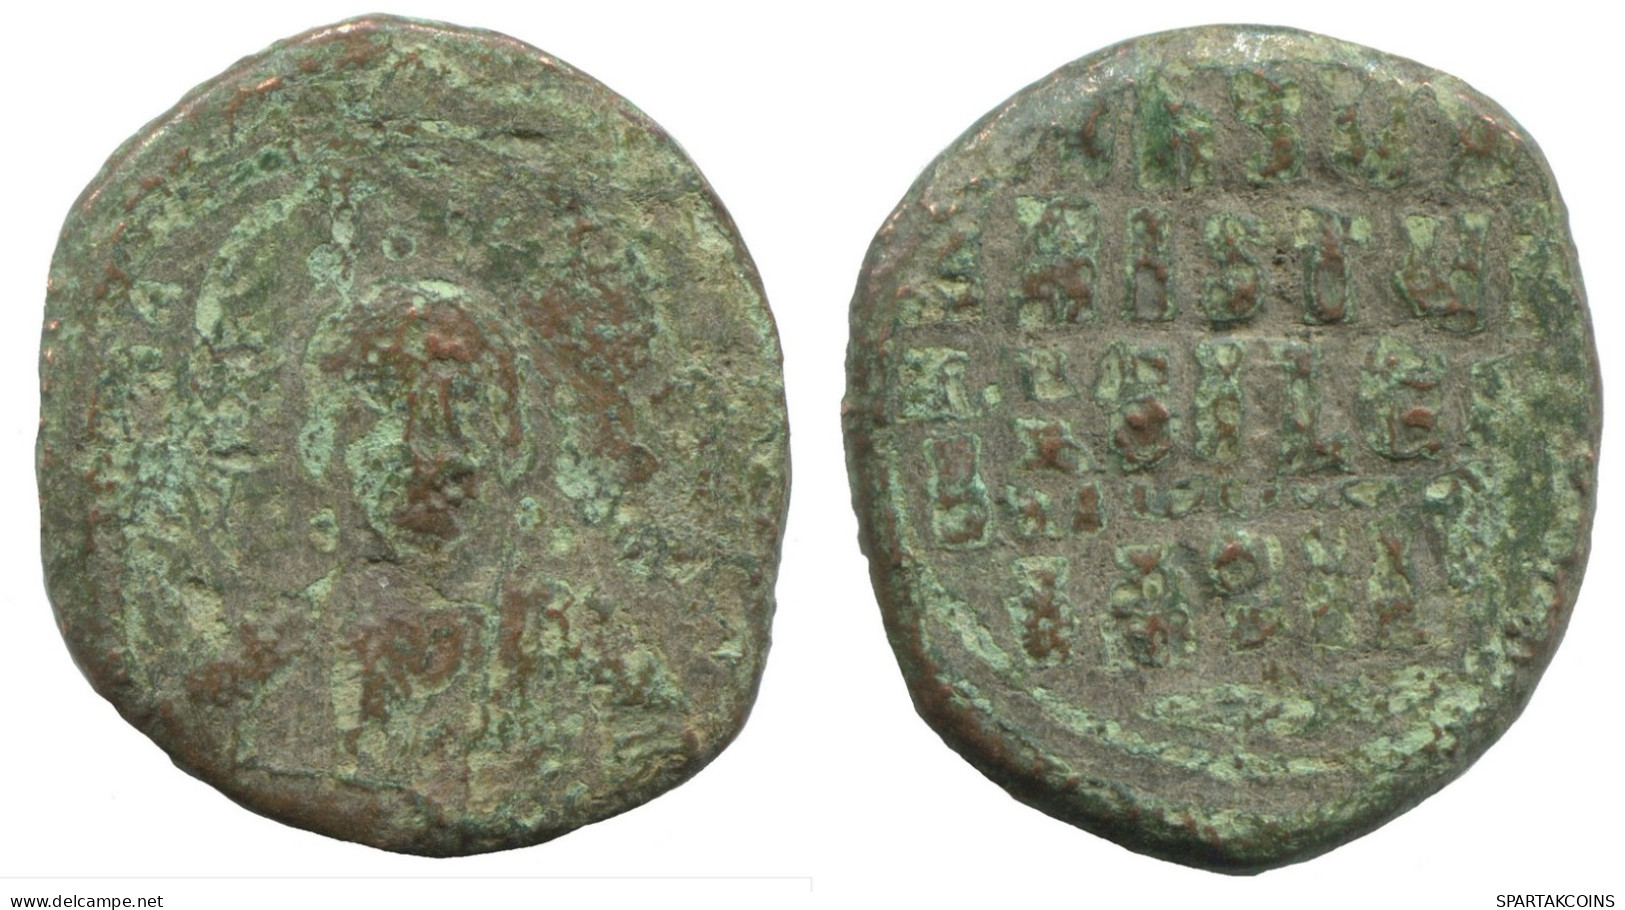 ANONYMOUS FOLLIS JESUS CHRIST 7.9g/27mm GENUINE BYZANTINE Coin #SAV1026.10.U.A - Byzantine